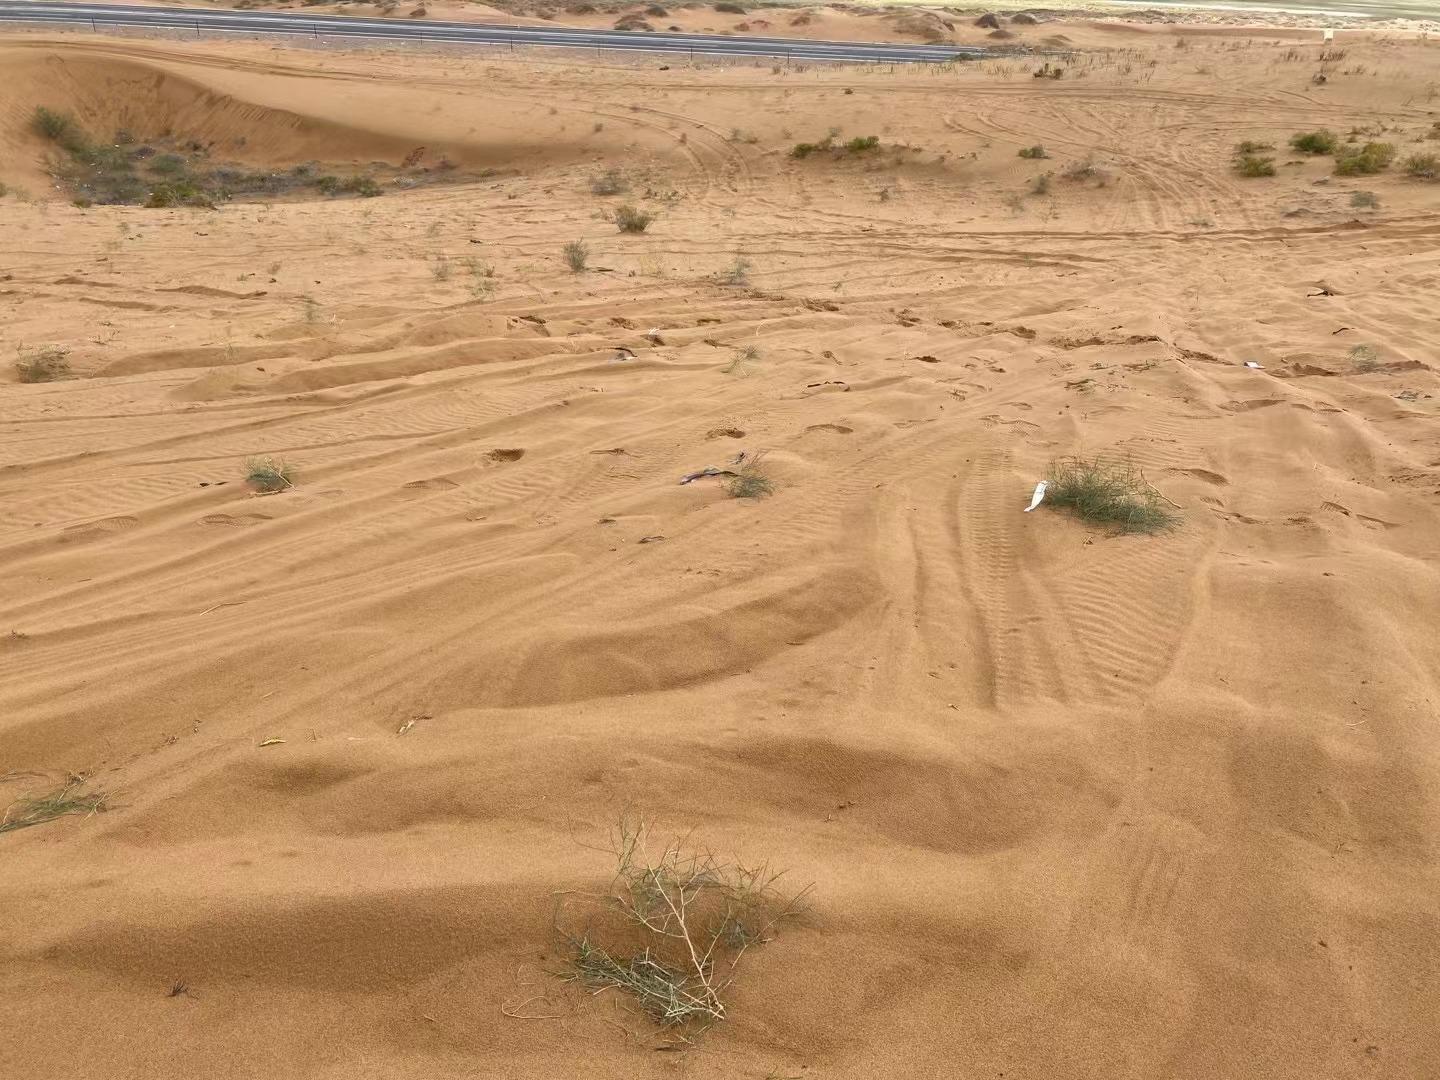 腾格里沙漠治沙植物遭碾压，2003棵苗木受损 项目负责人：附近无监控，部分围栏被车撞开